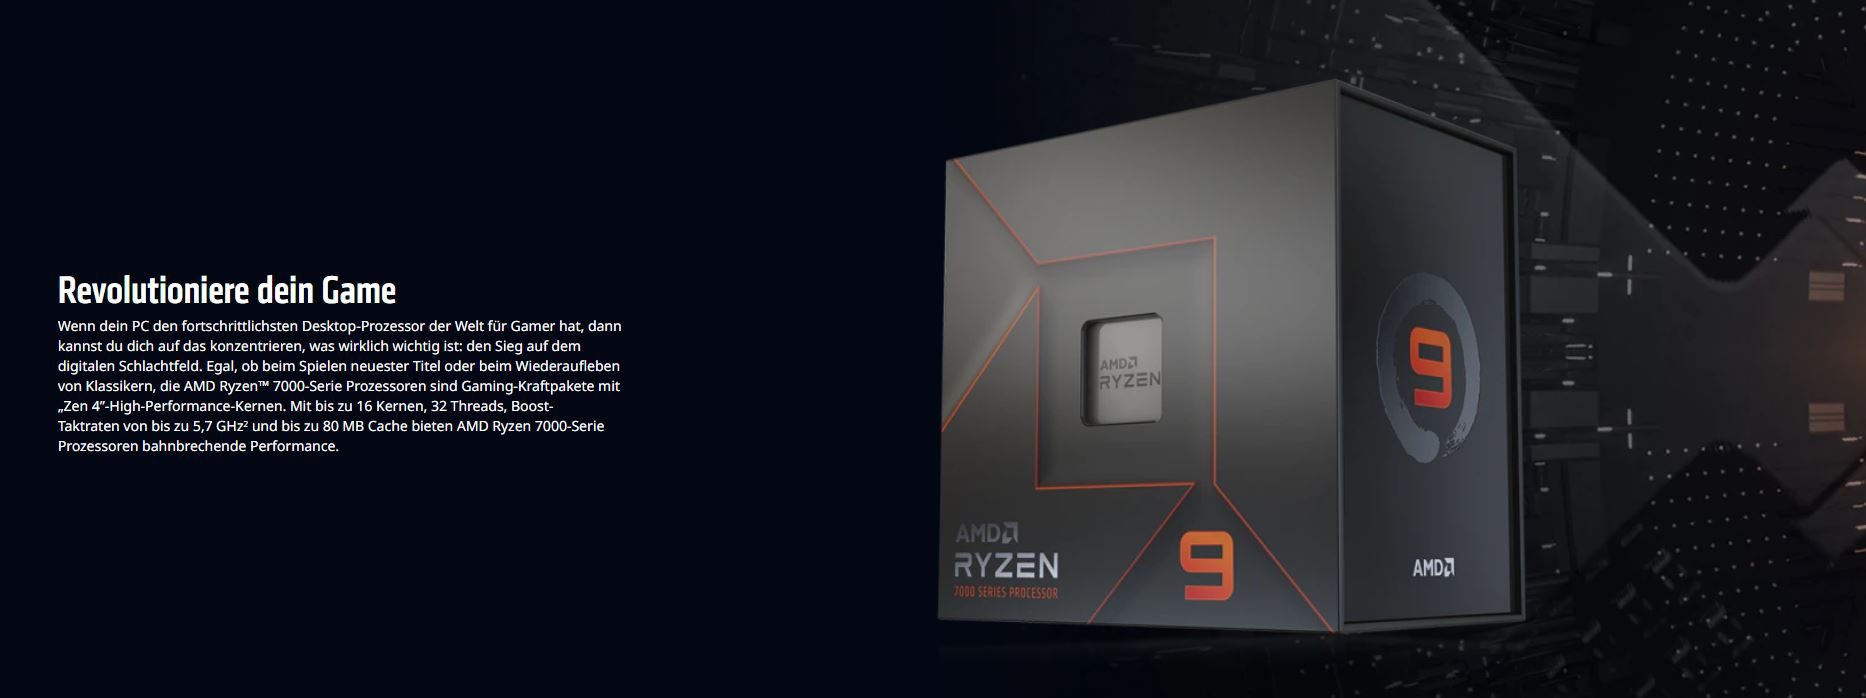 AMD-Ryzen-9-7900X_LT1